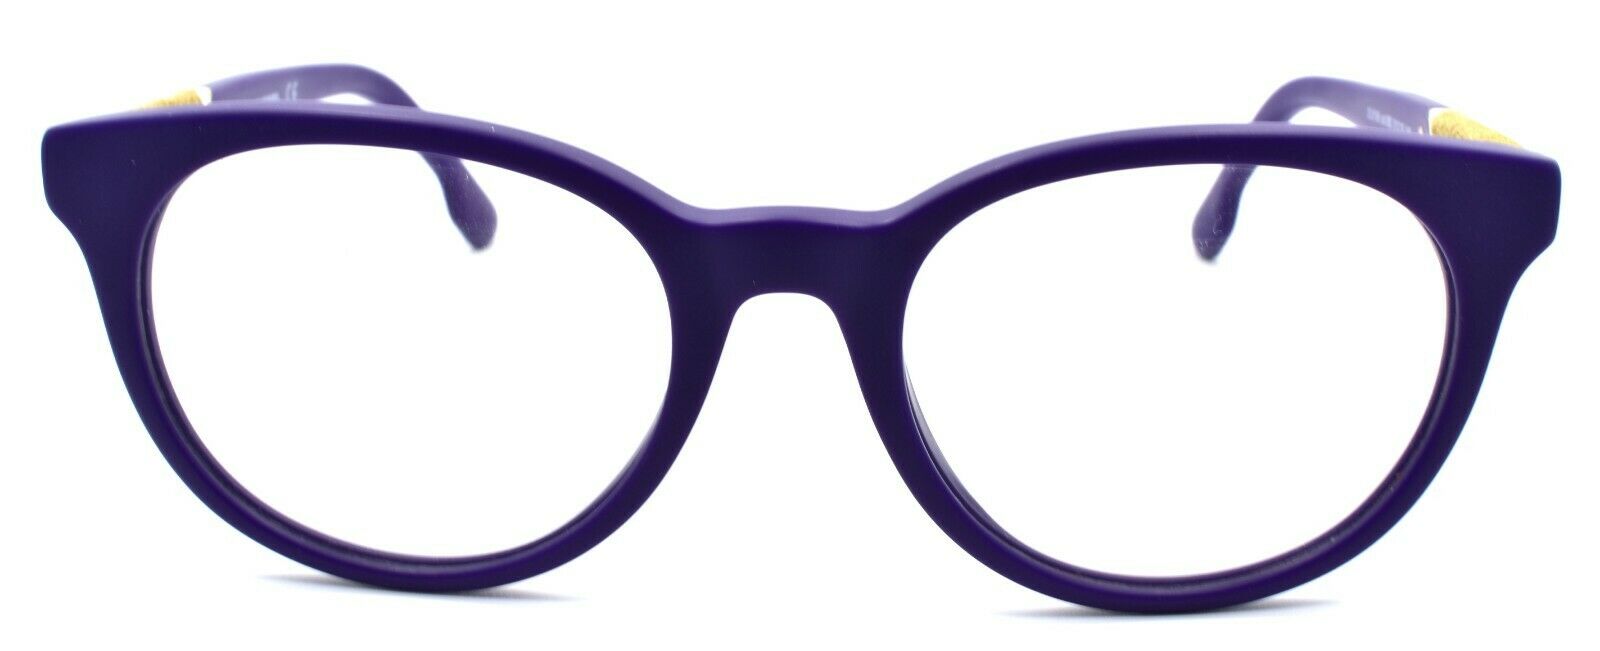 2-Diesel DL5156 082 Women's Eyeglasses Frames 51-19-145 Matte Violet / Brown Denim-664689707867-IKSpecs